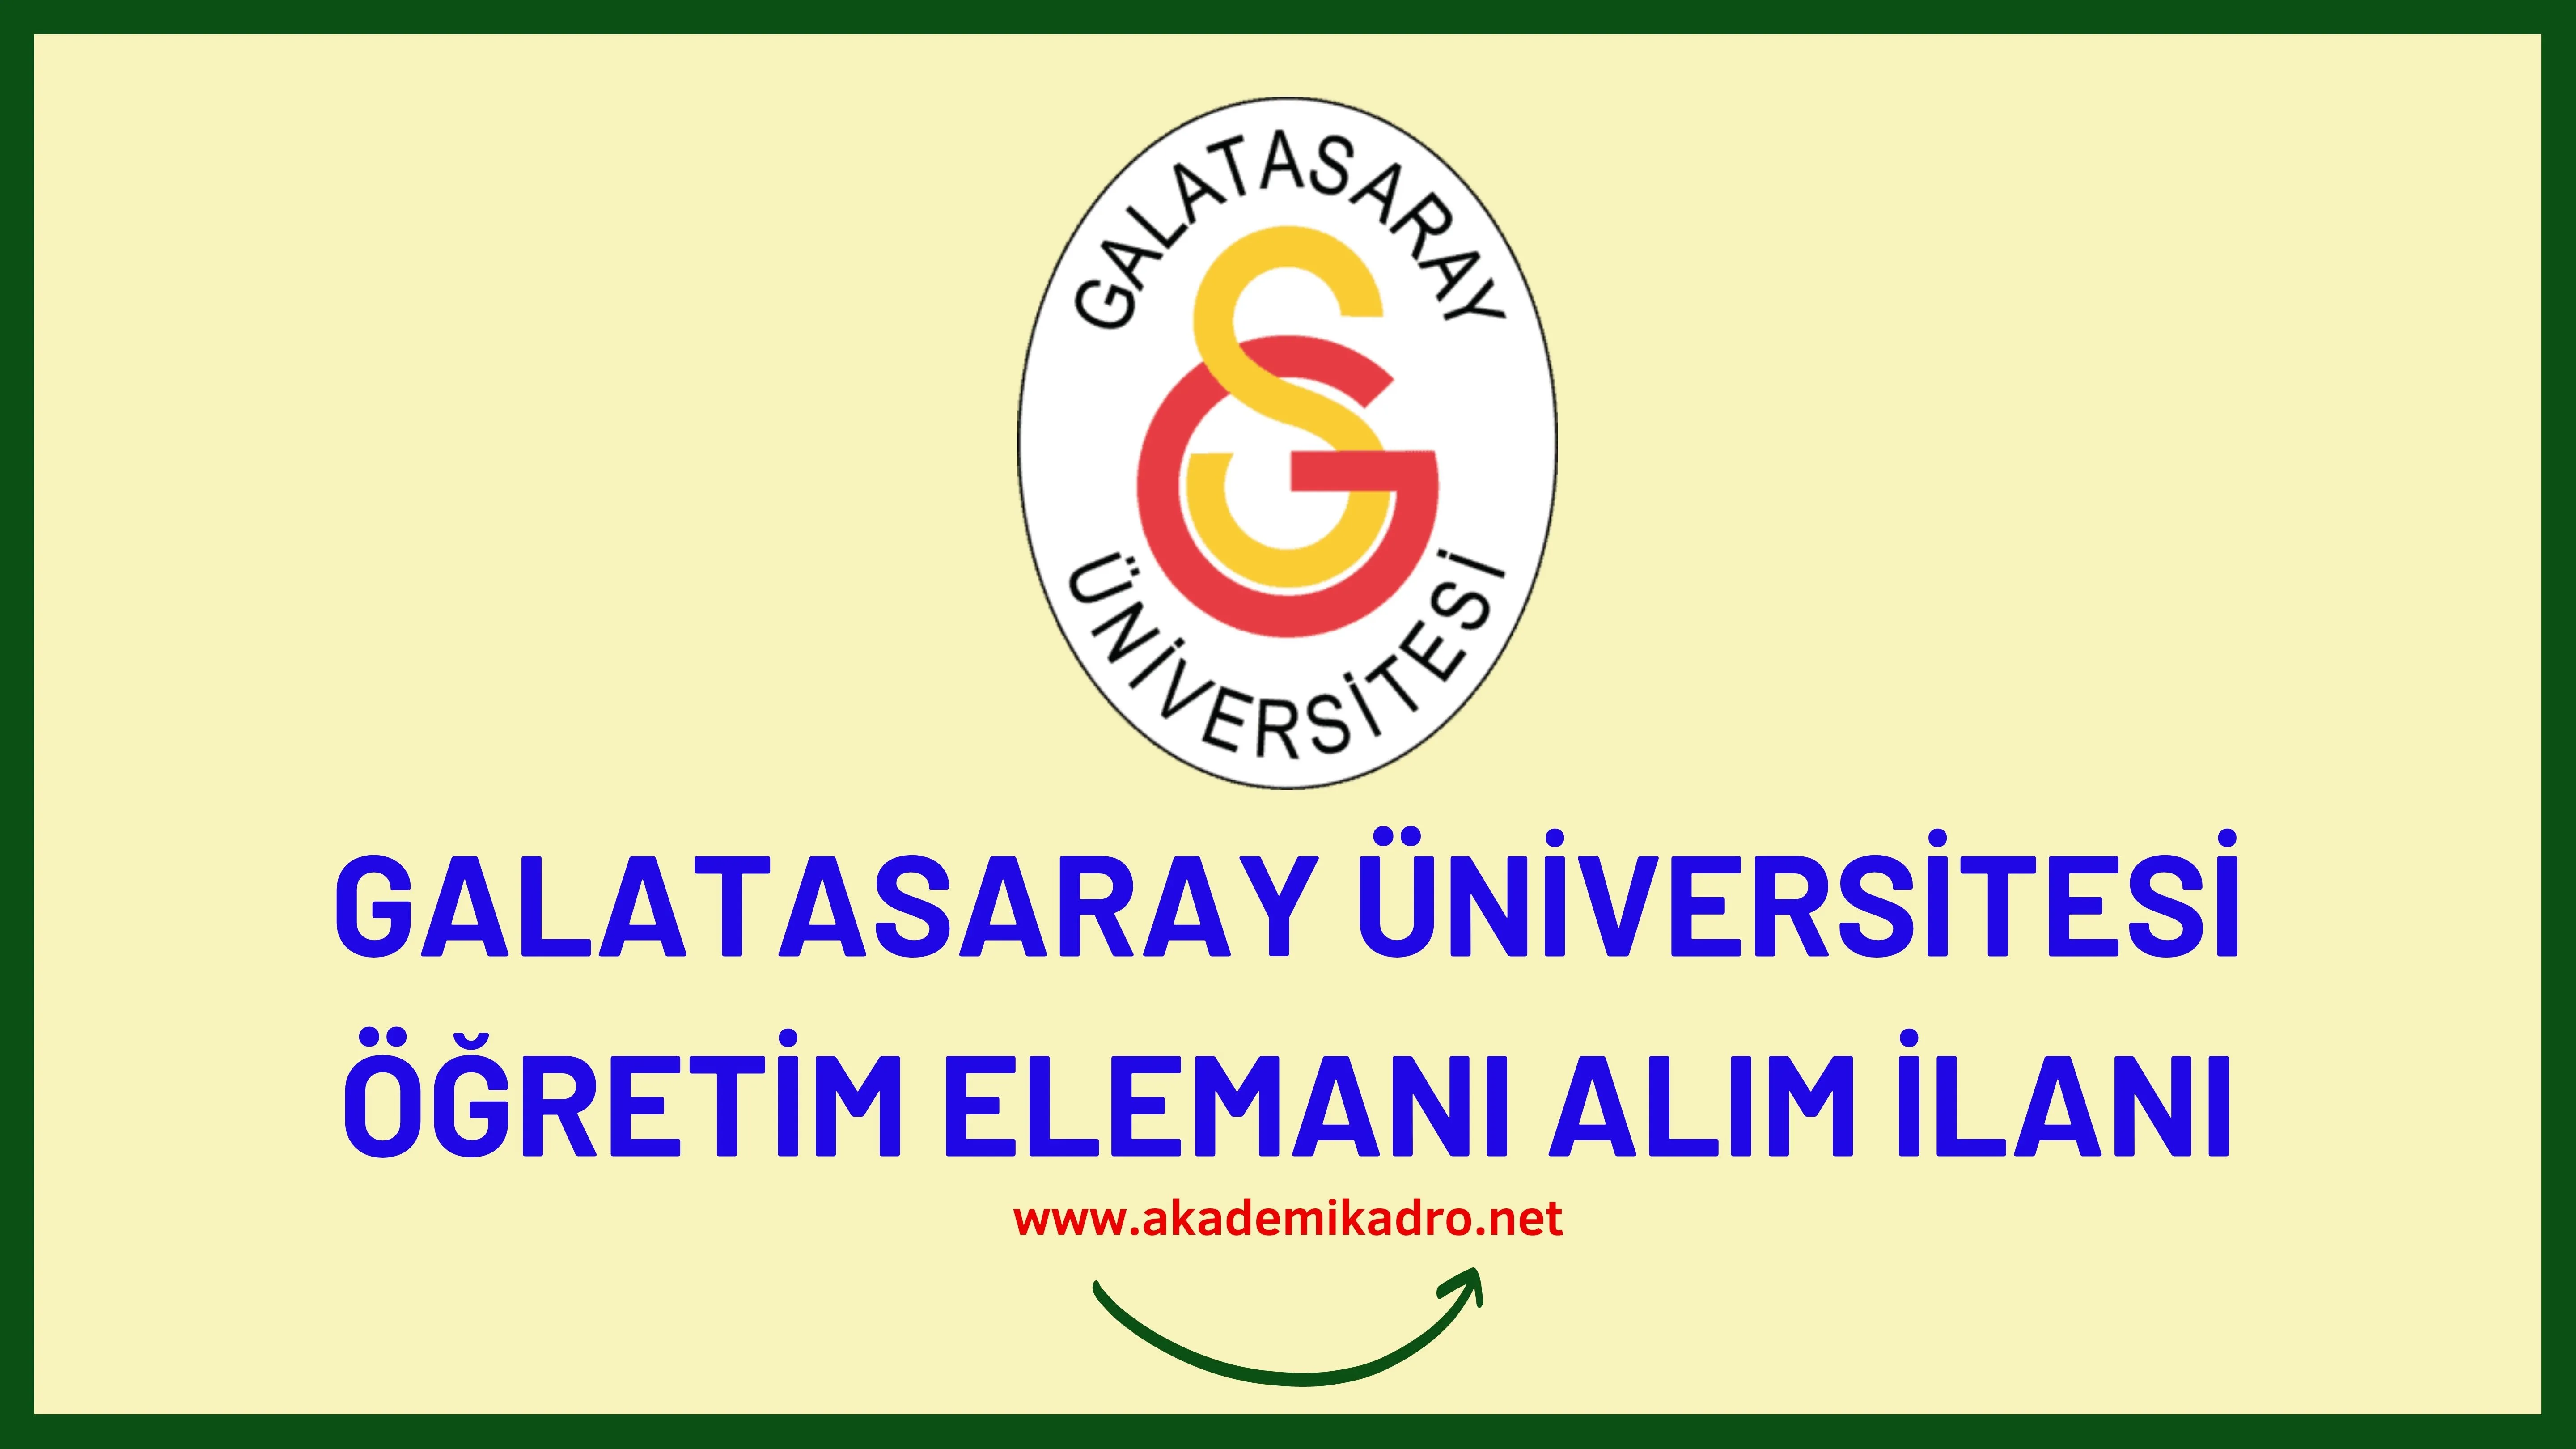 Galatasaray Üniversitesi 6 Araştırma Görevlisi ve 2 Öğretim Görevlisi alacaktır. Son başvuru tarihi 11 Ekim 2022.